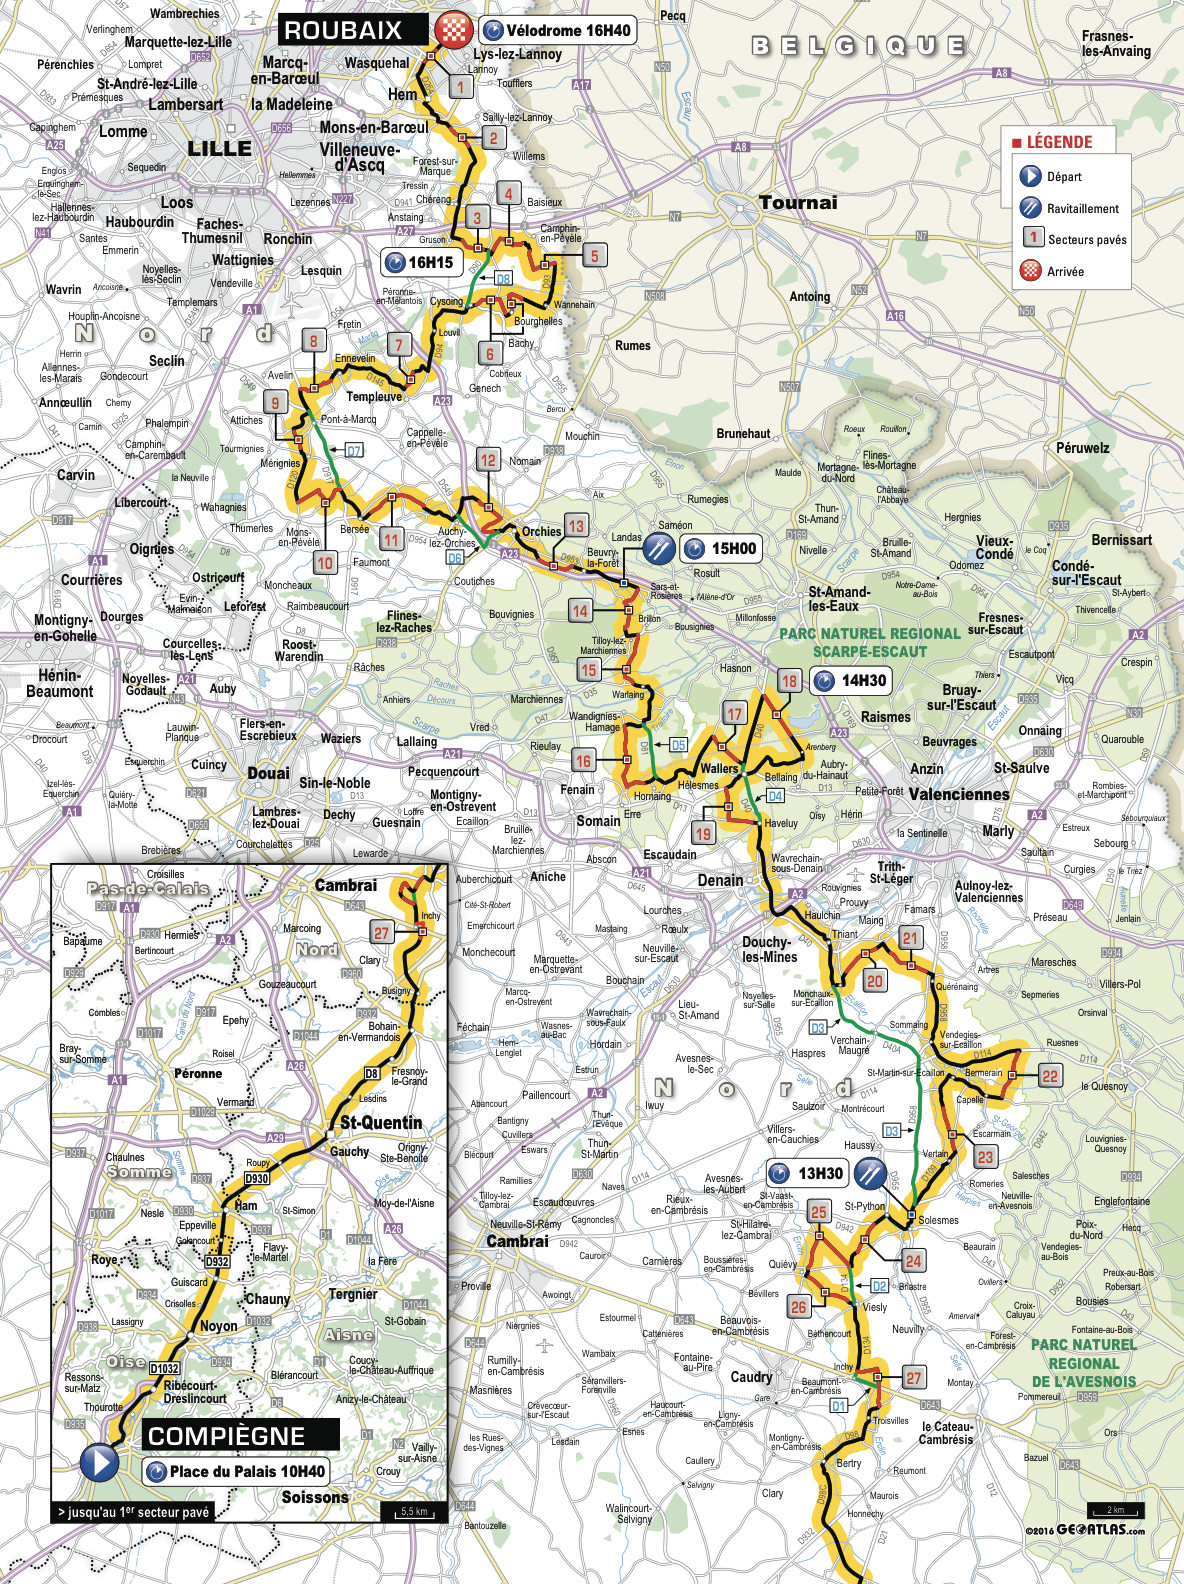 Paris-Roubaix 2016 - parcours